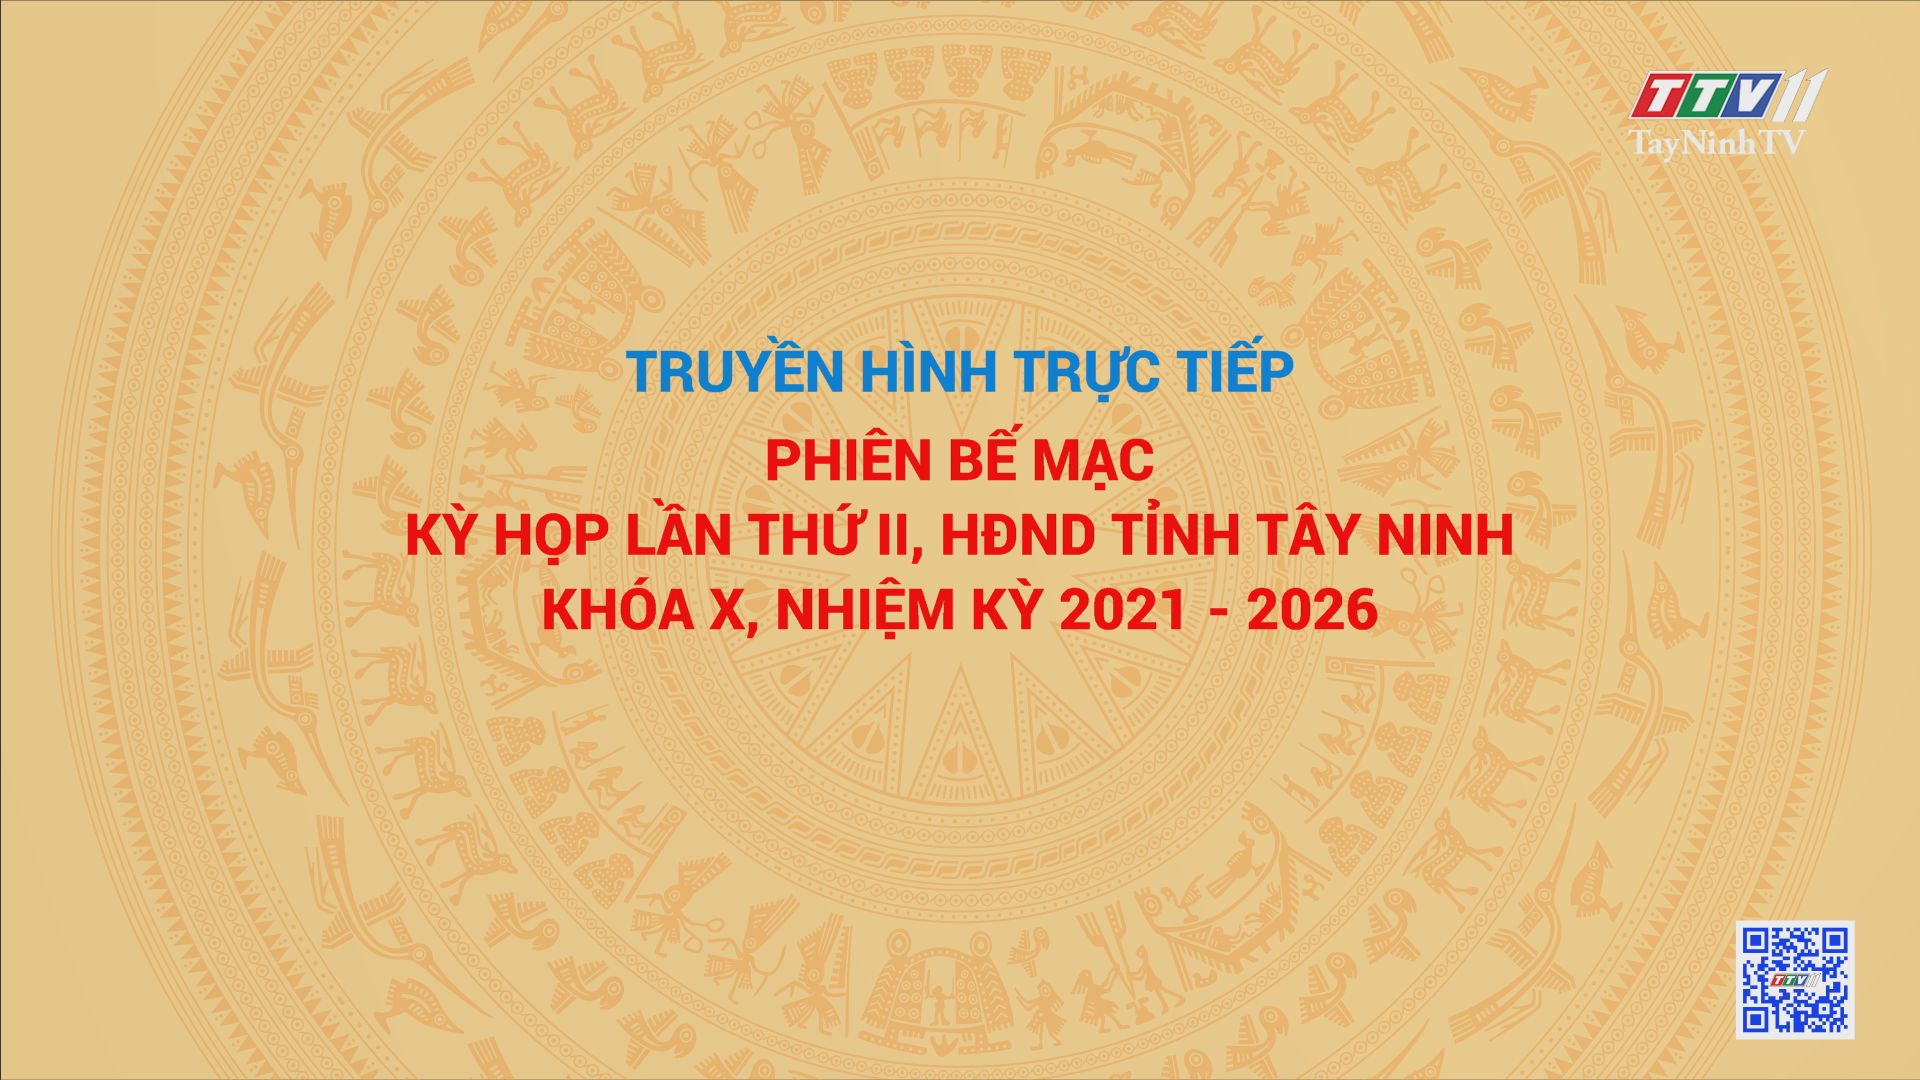 TRỰC TIẾP-PHIÊN BẾ MẠC KỲ HỌP LẦN THỨ II, HĐND TỈNH TÂY NINH KHÓA X, NHIỆM KỲ 2021-2026 (phần một) | TayNinhTV